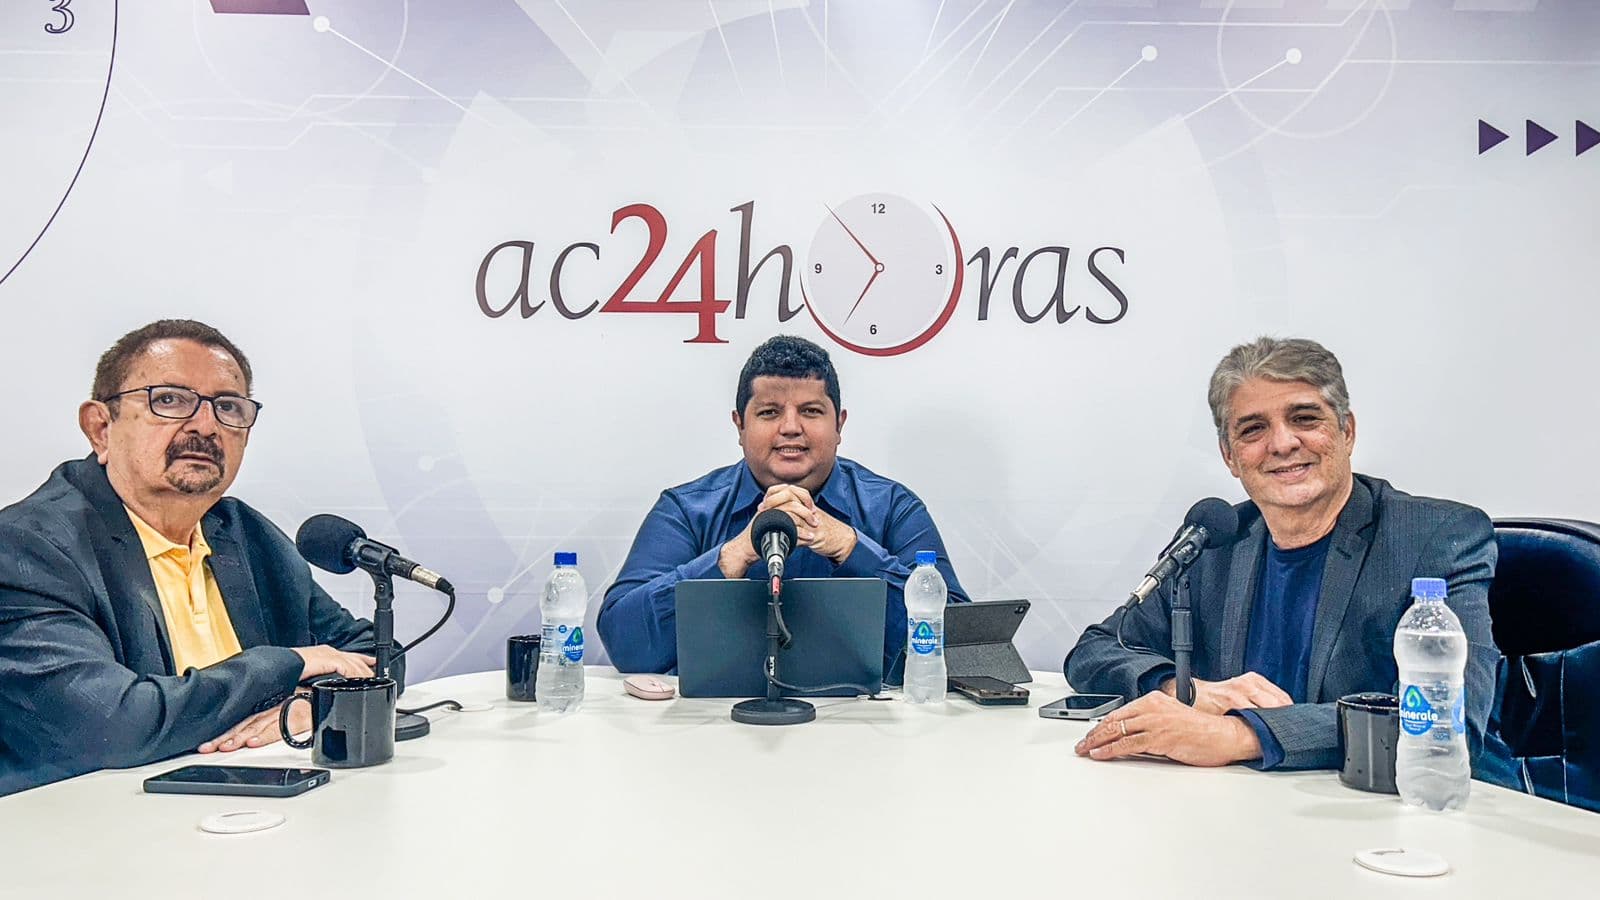 Boa Conversa I Crica, Astério Moreira e Marcos Venícios comentam os bastidores da semana política